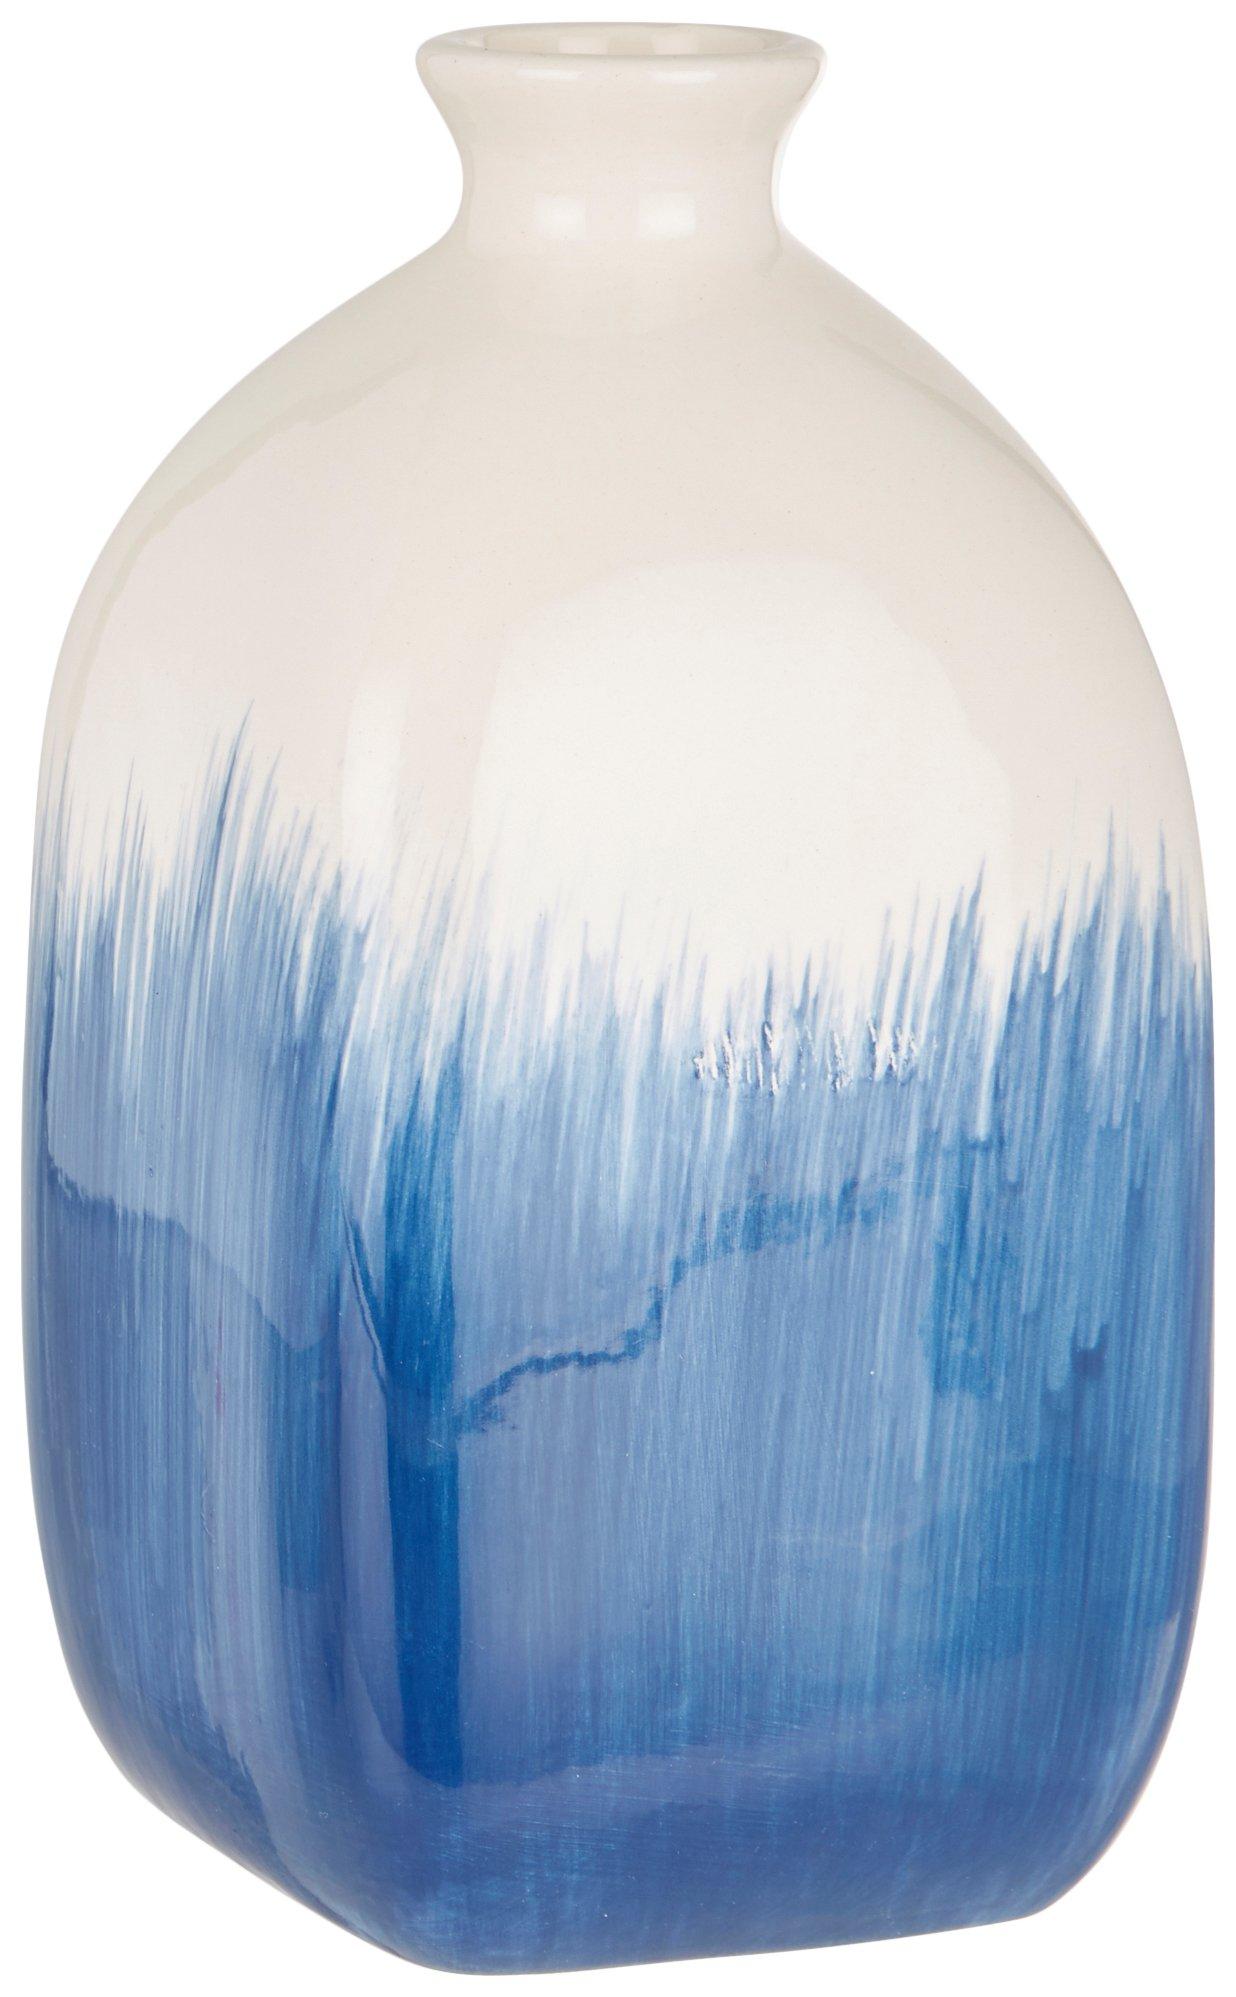 7in Painted Ceramic Vase